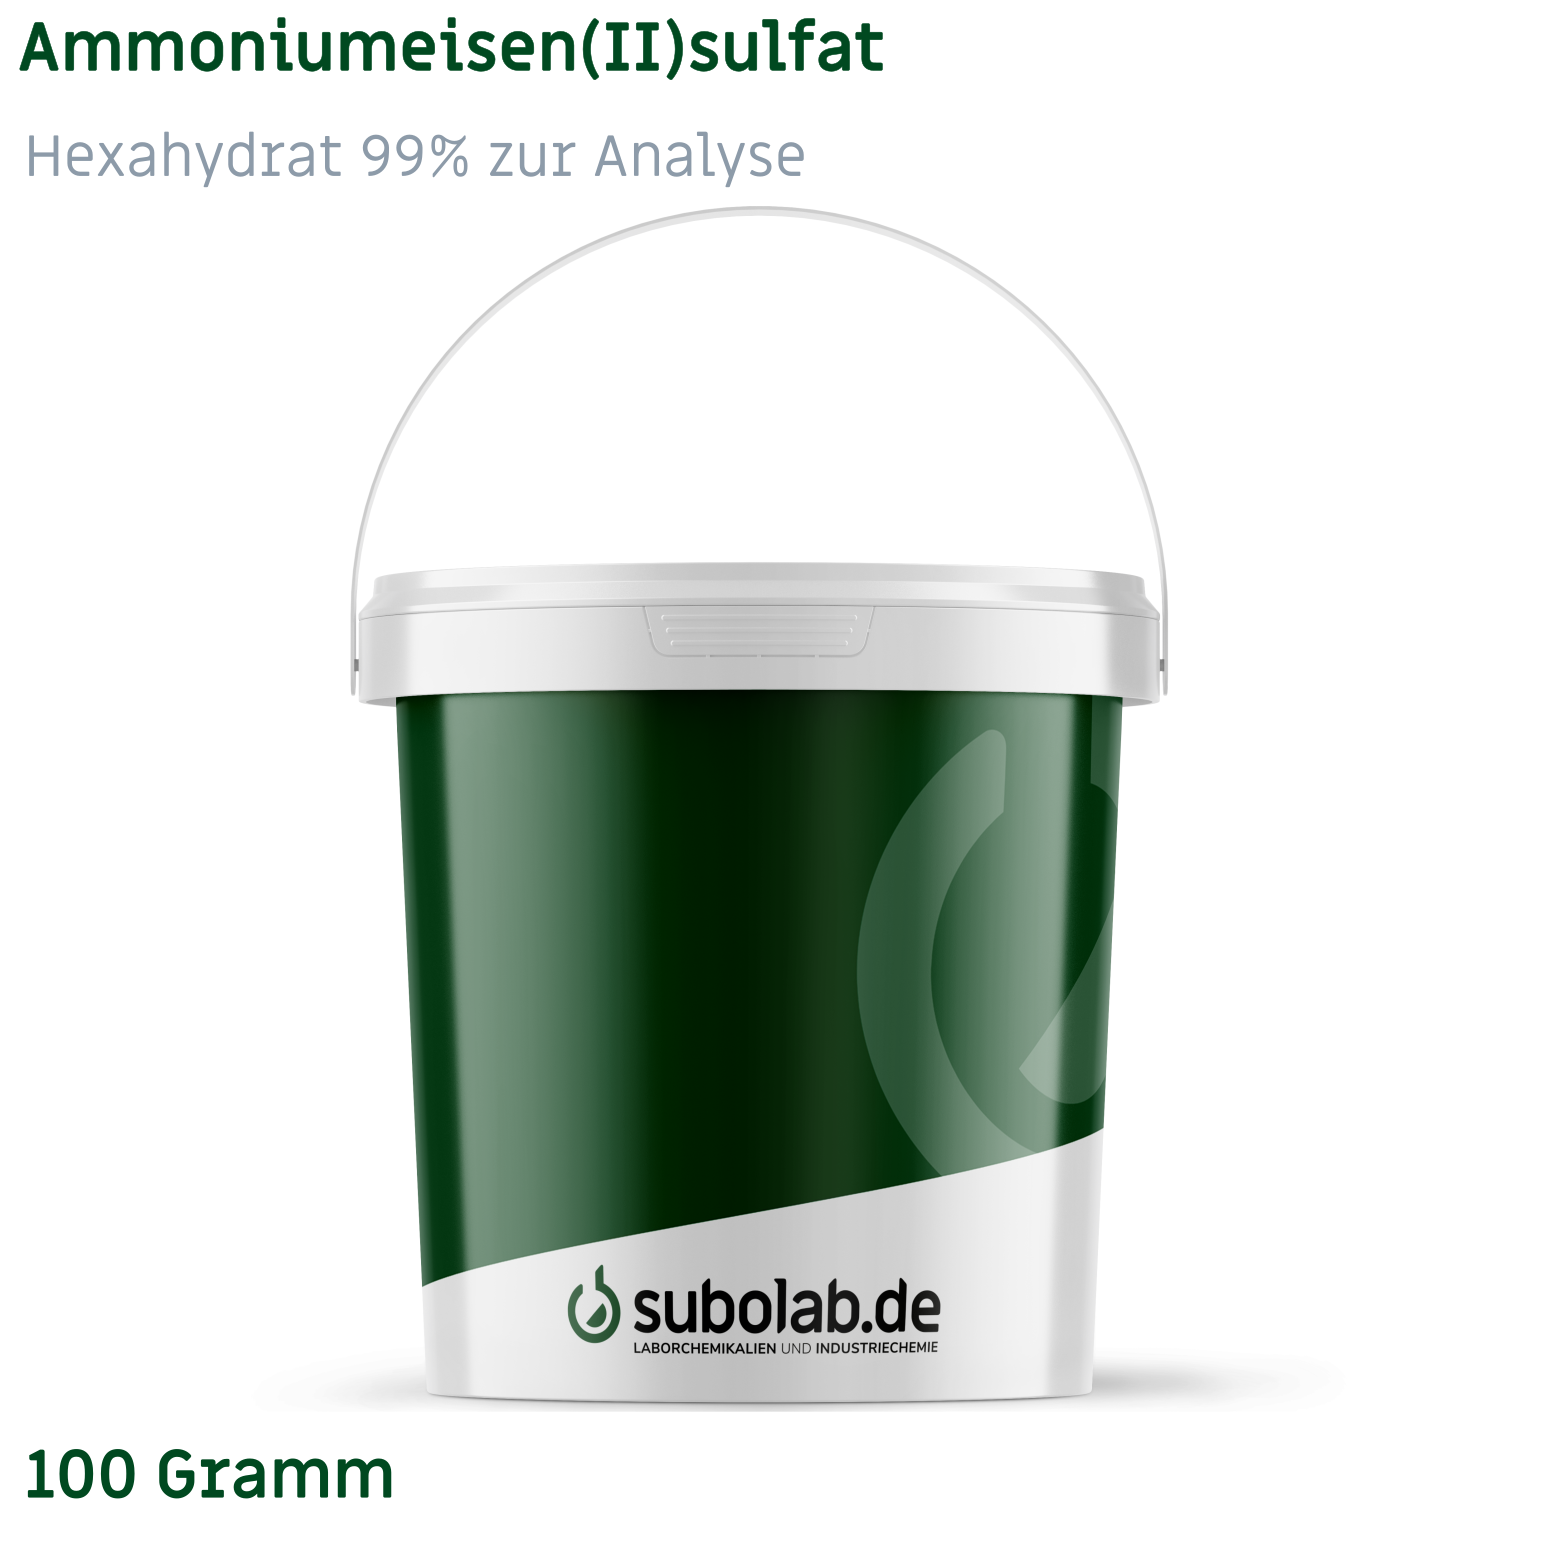 Bild von Ammoniumeisen(II)sulfat - Hexahydrat 99% zur Analyse (100 Gramm)